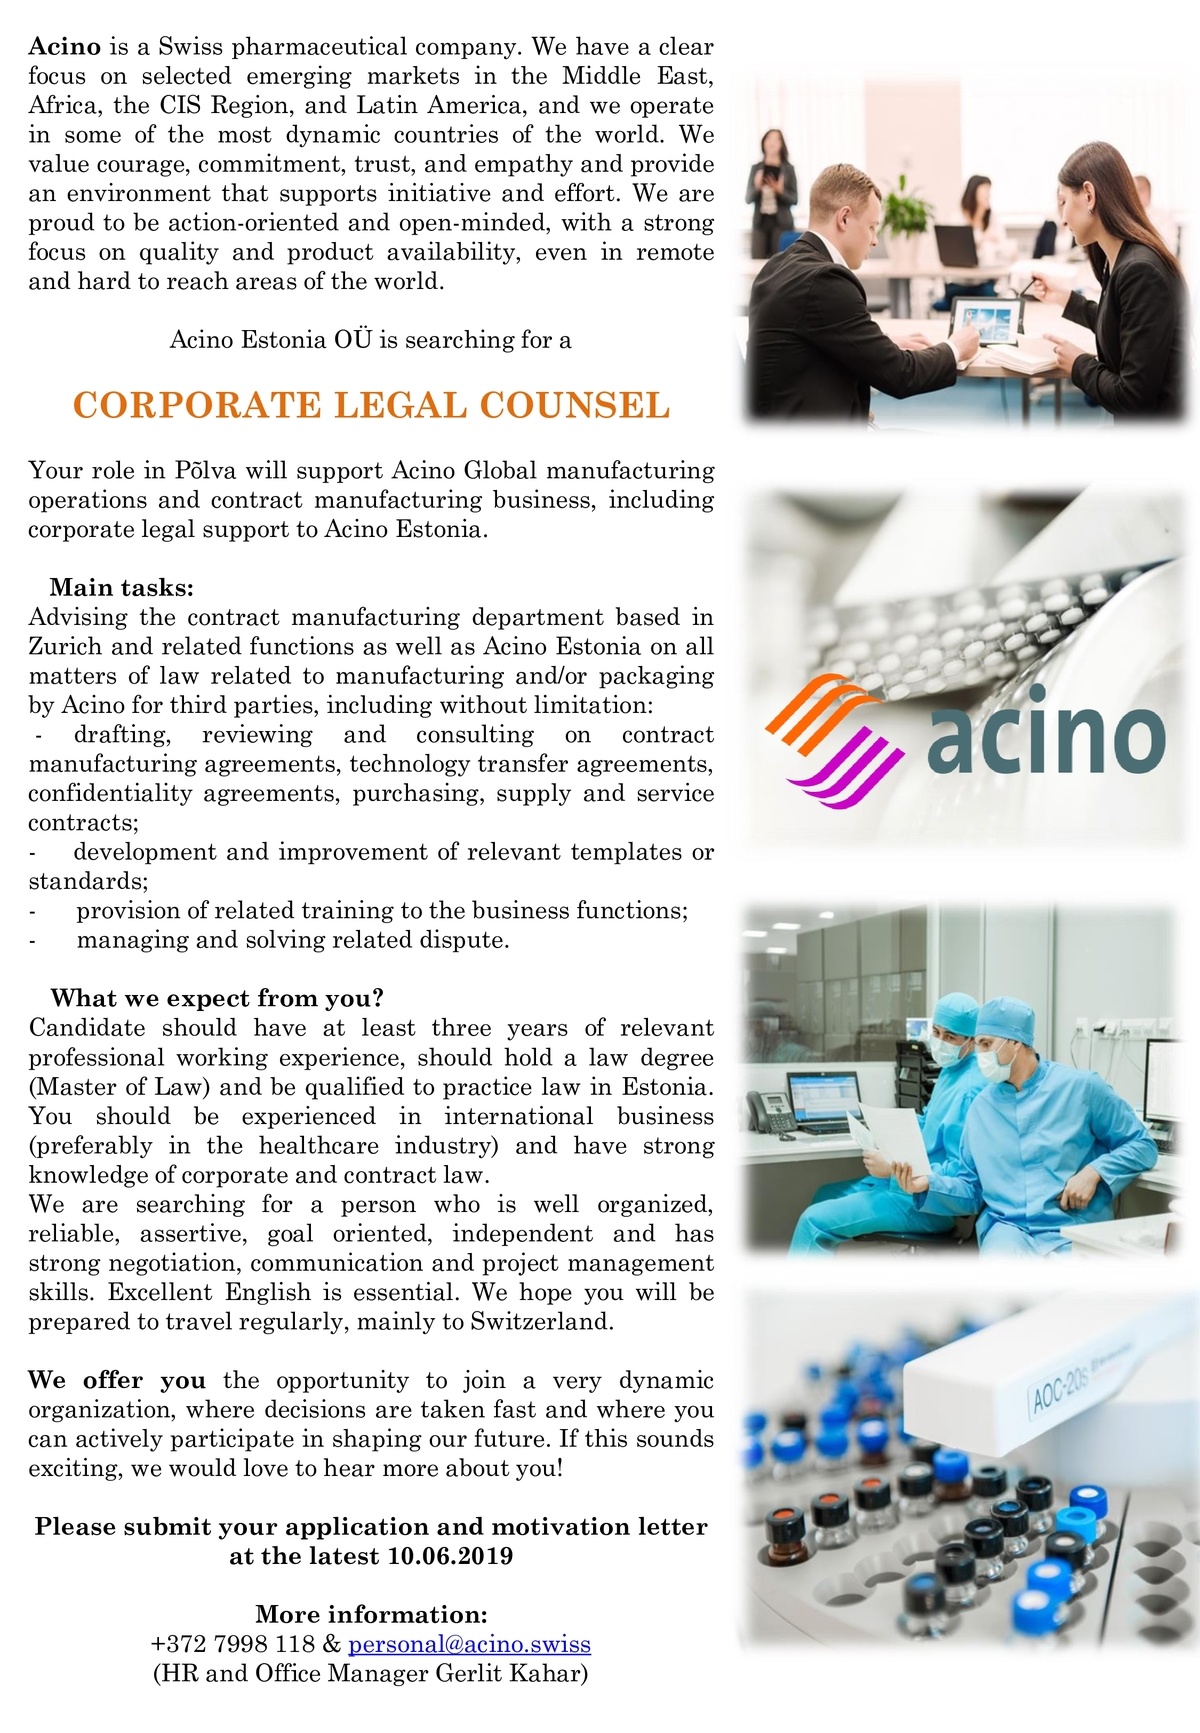 Acino Estonia OÜ Corporate Legal Counsel